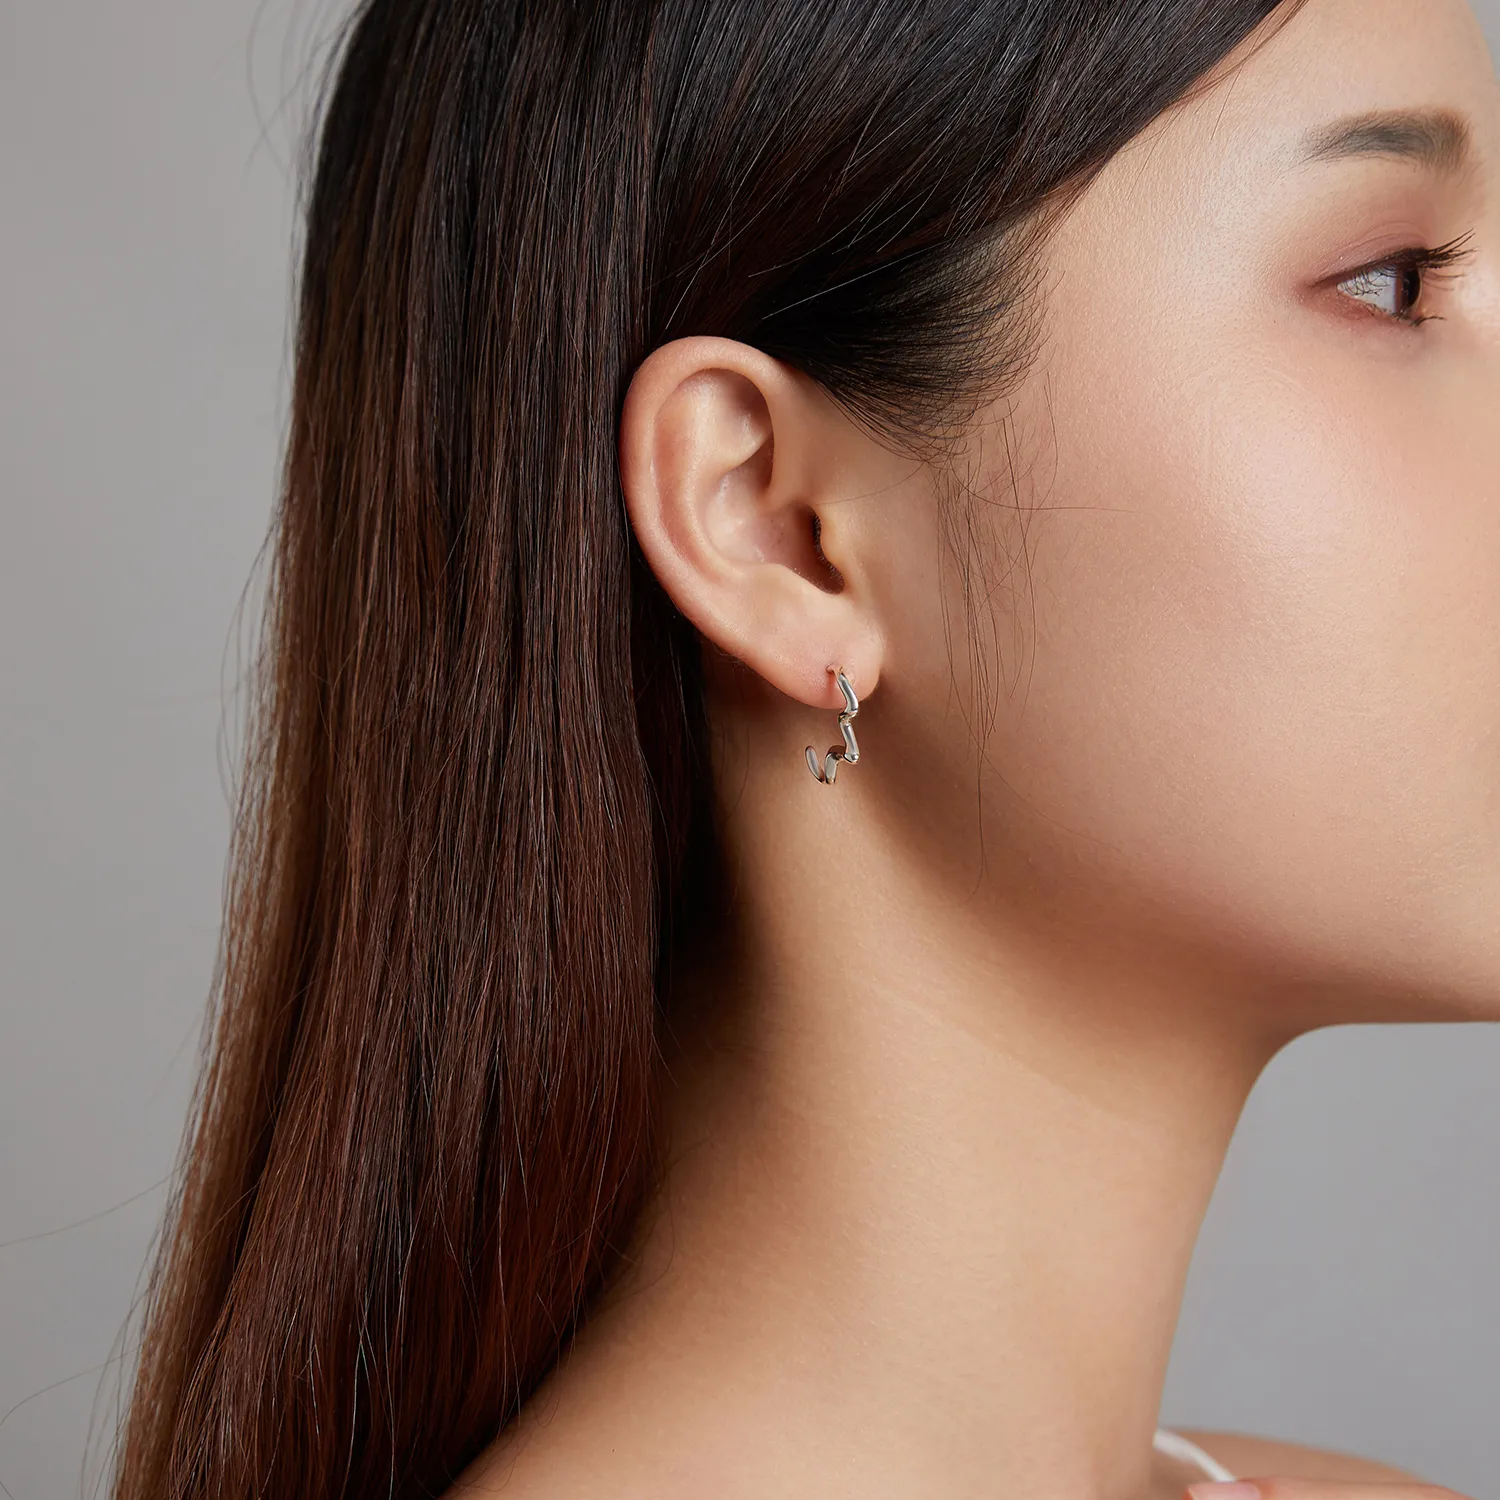 Stud Earrings în stilul Pandora, inspirate de valurile verii - SCE1196